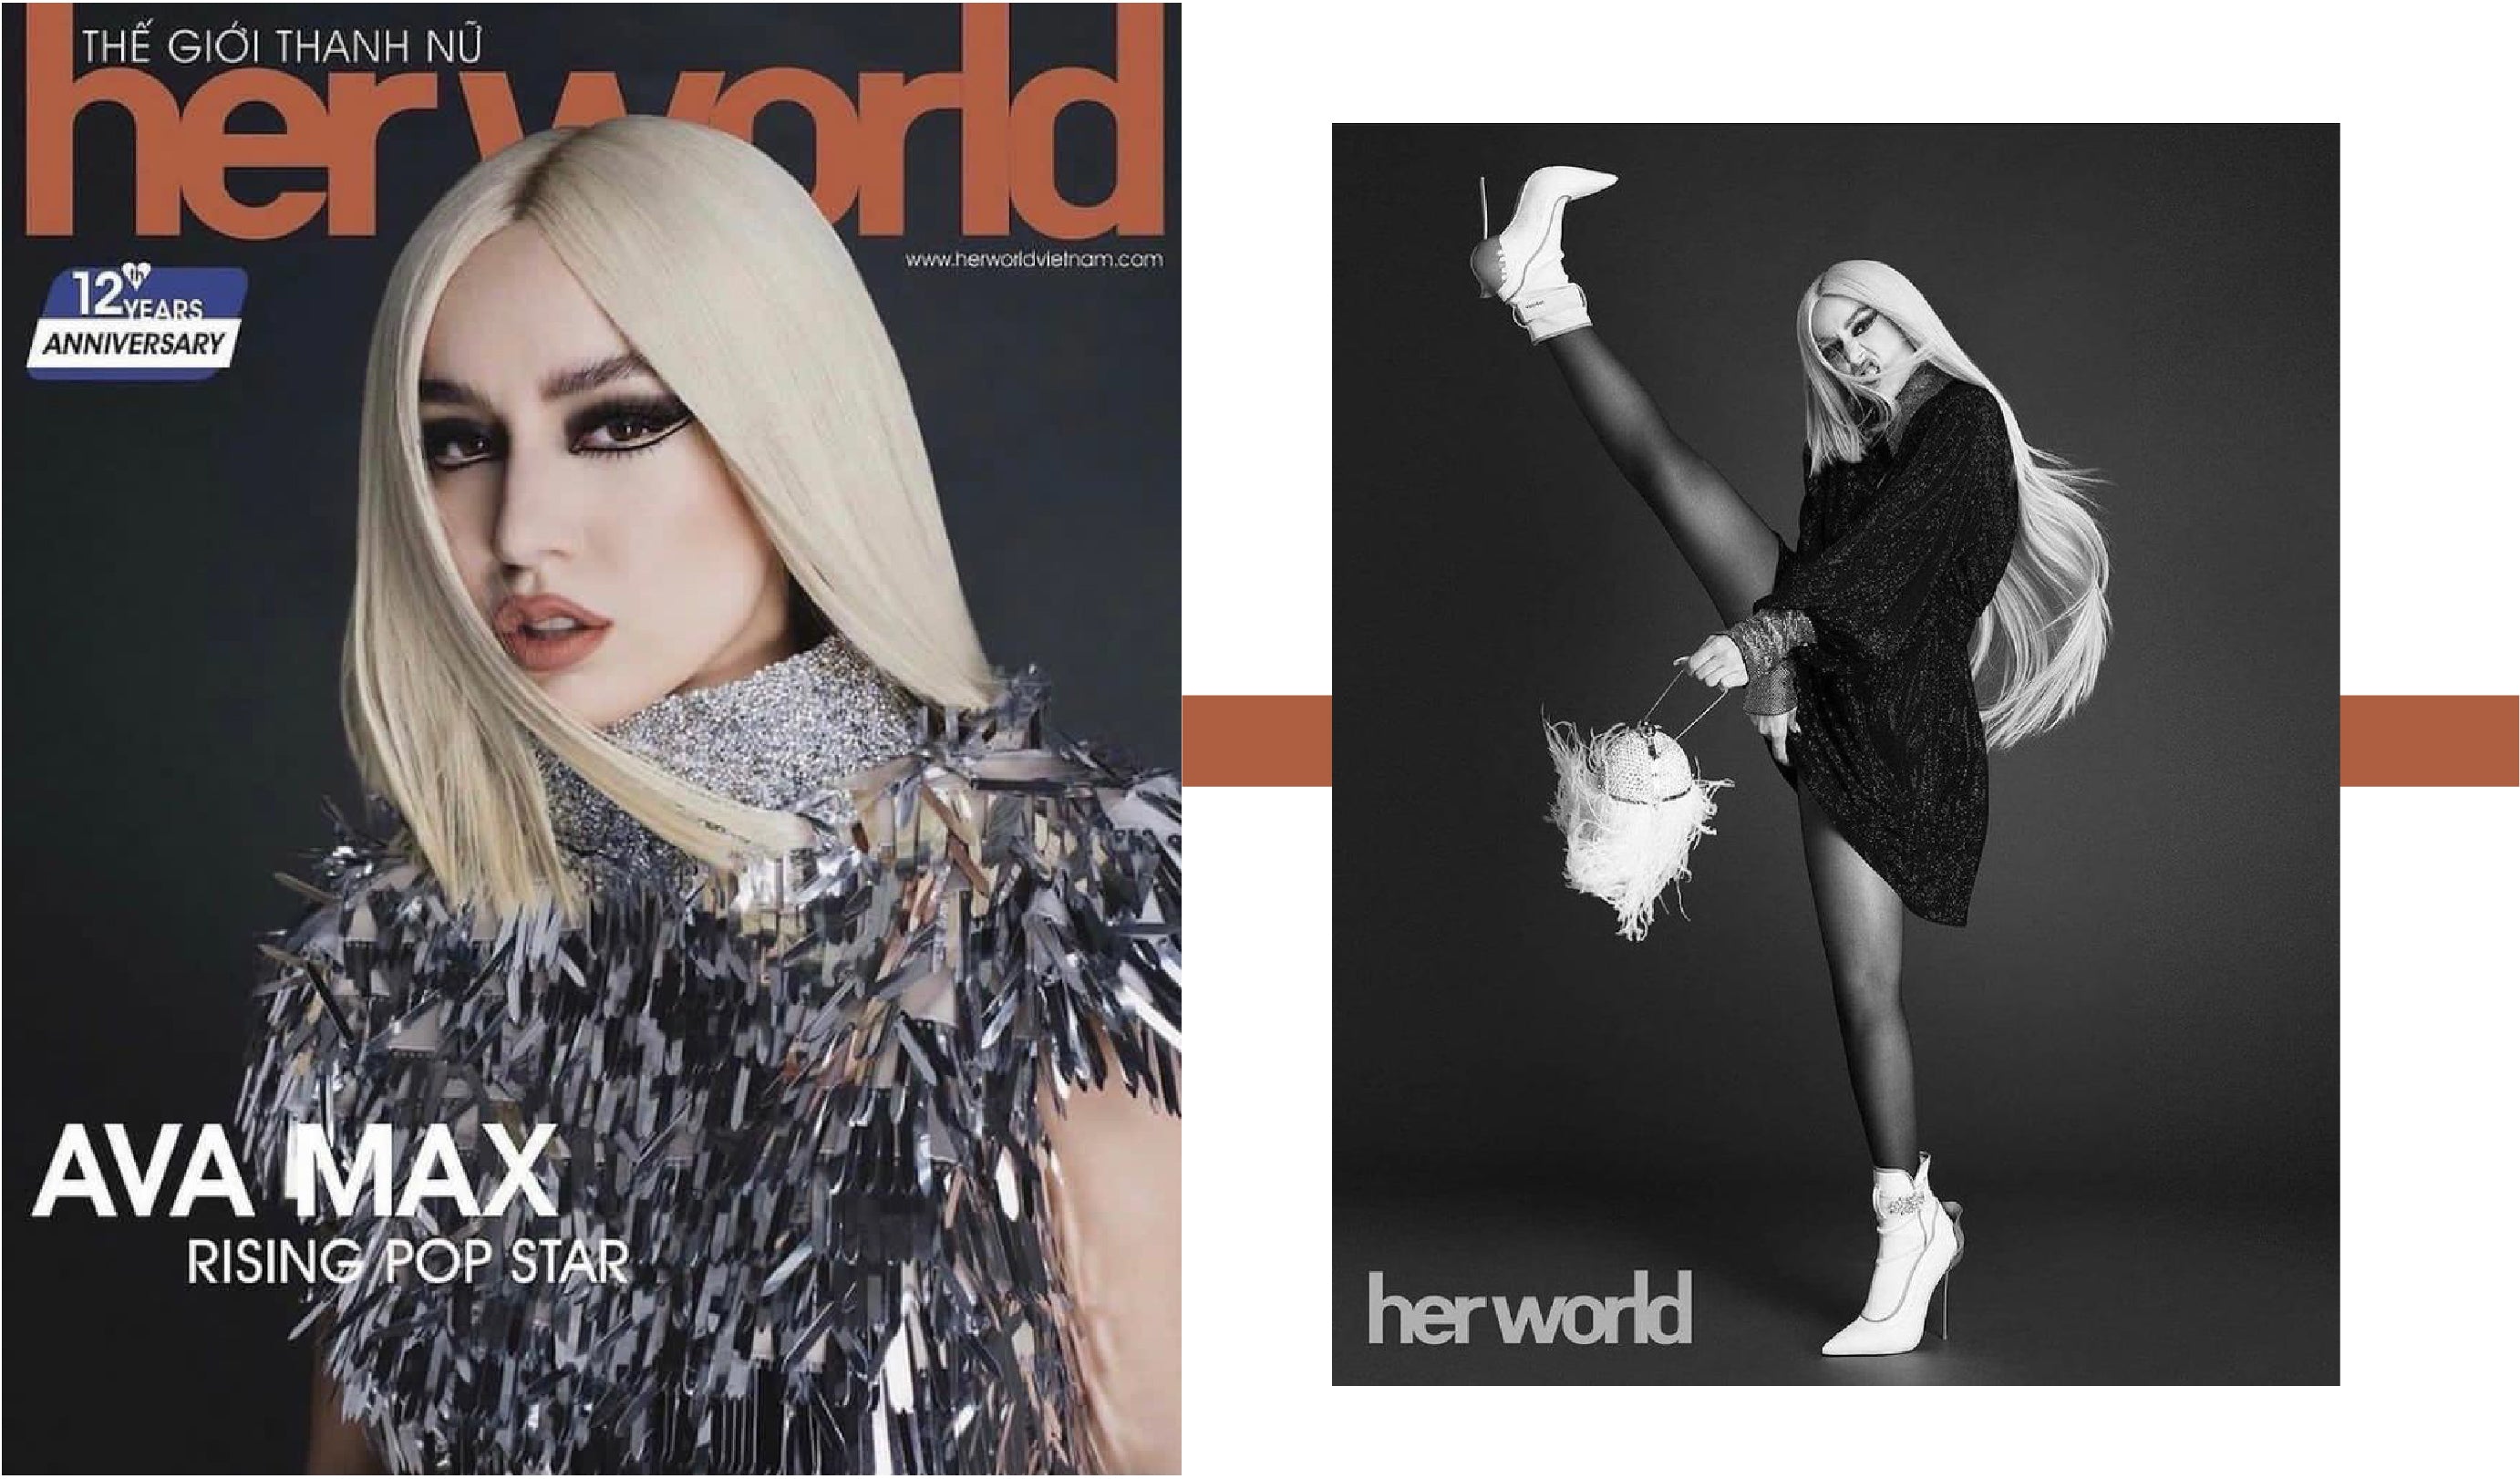 Her World Magazine